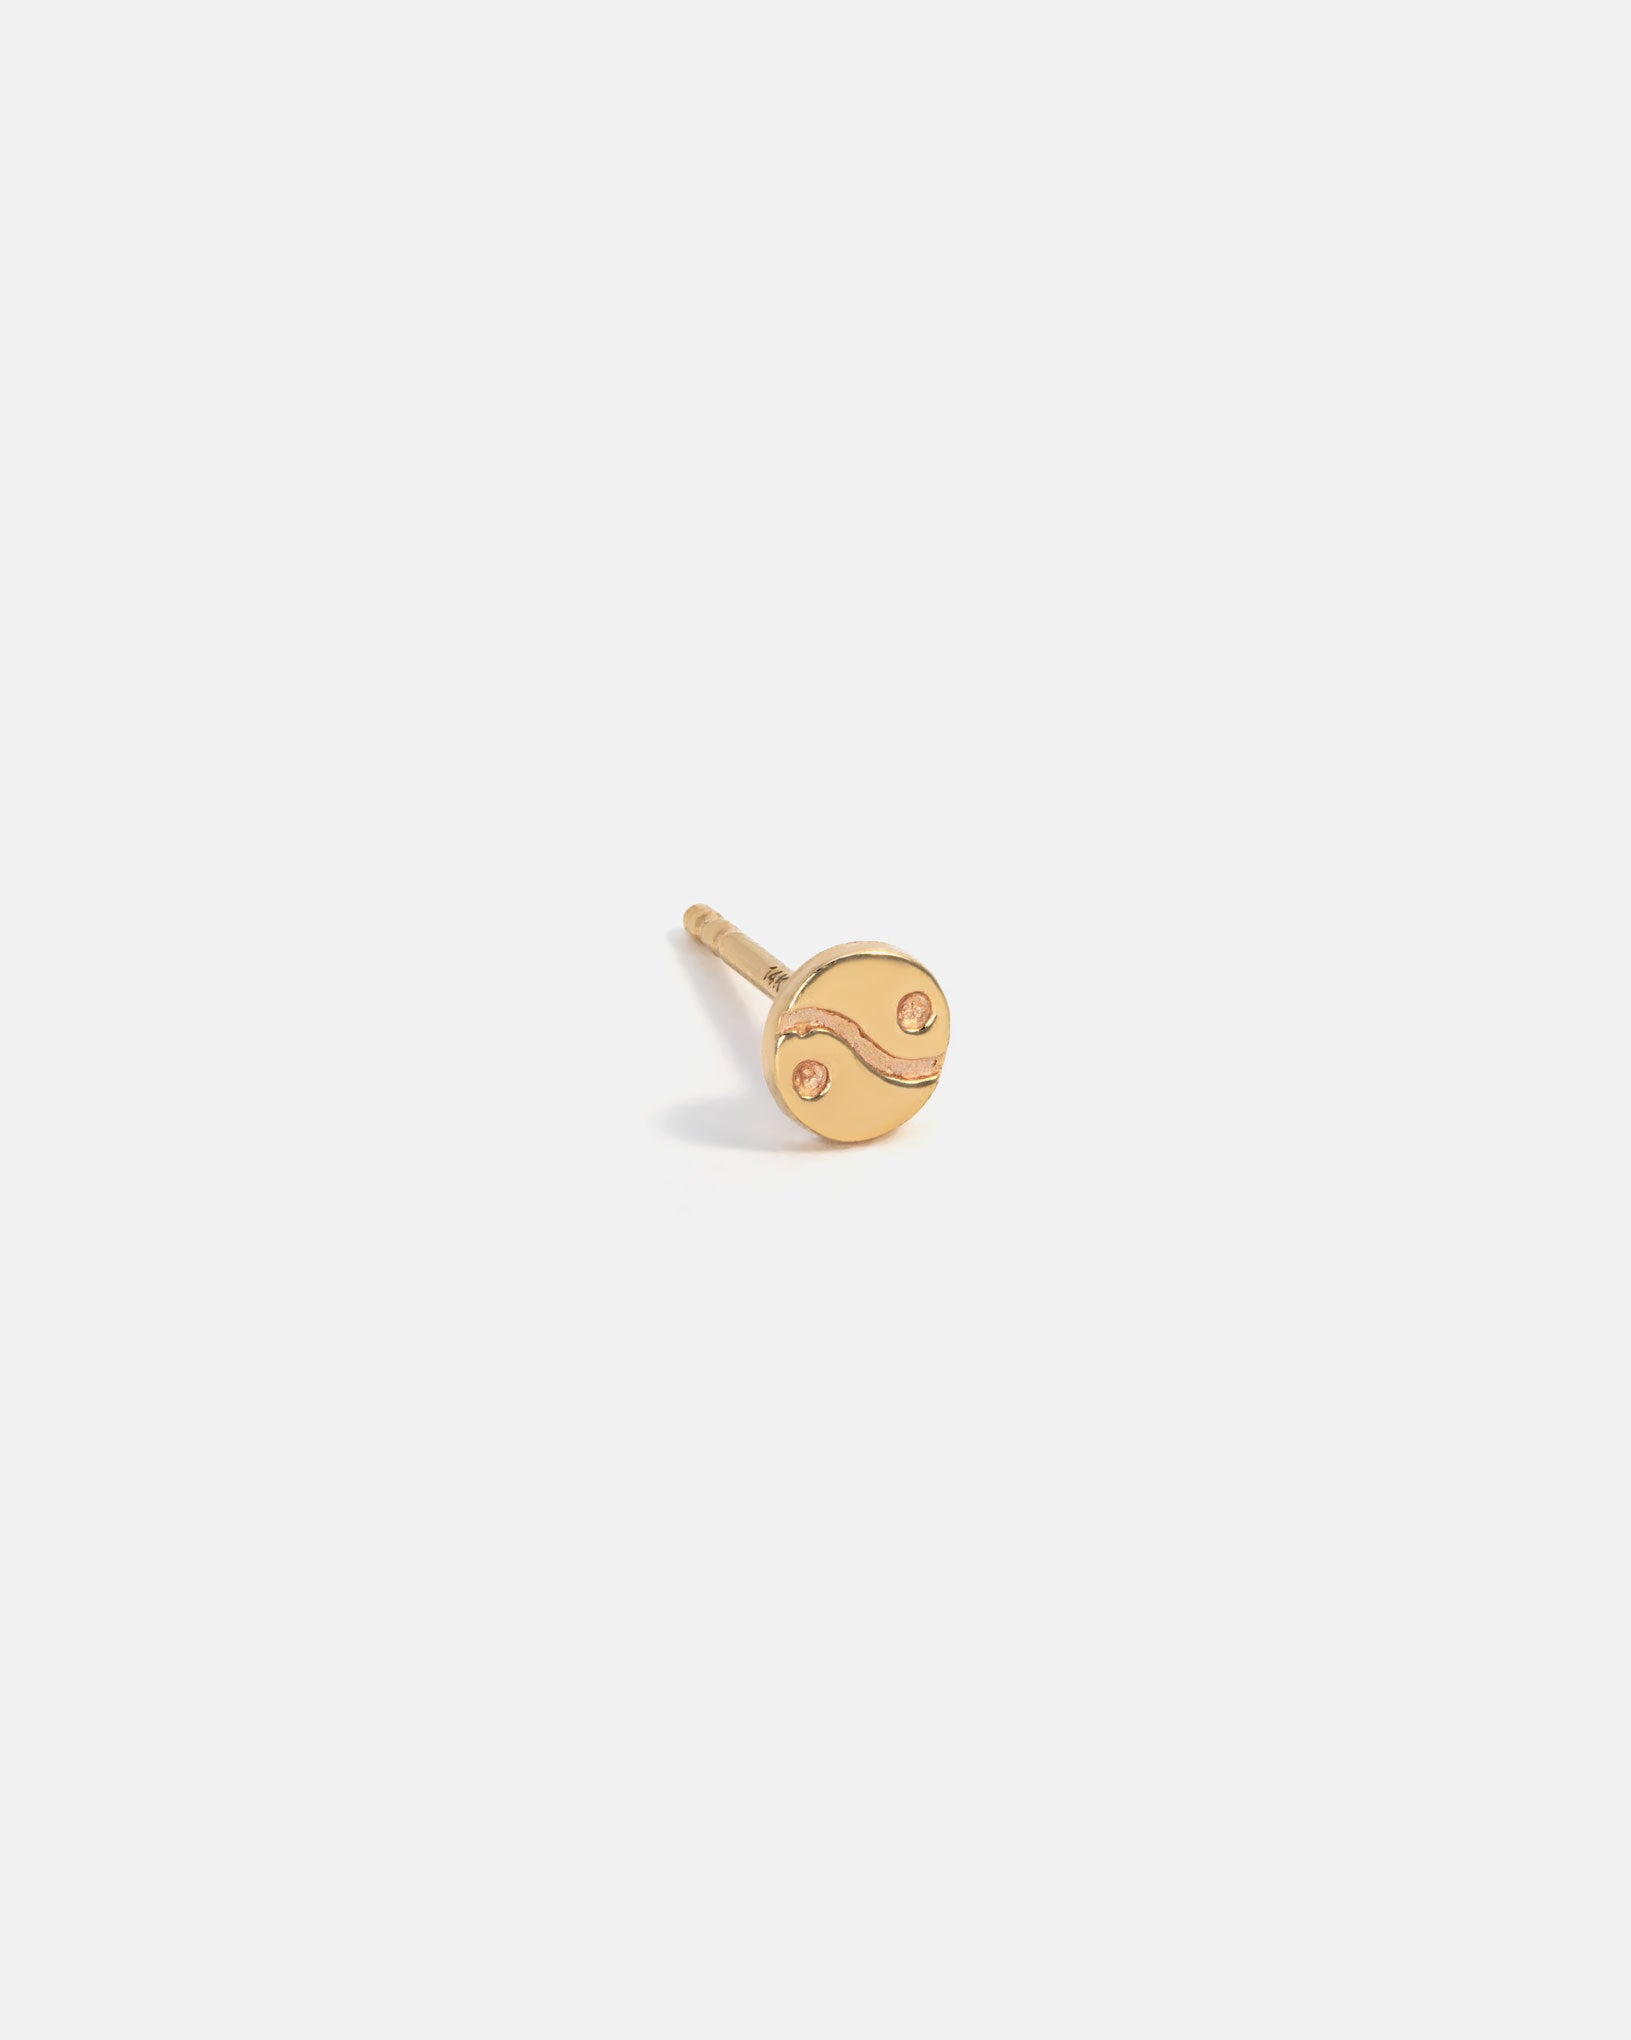 Yin & Yang Earring in 14k Yellow Gold